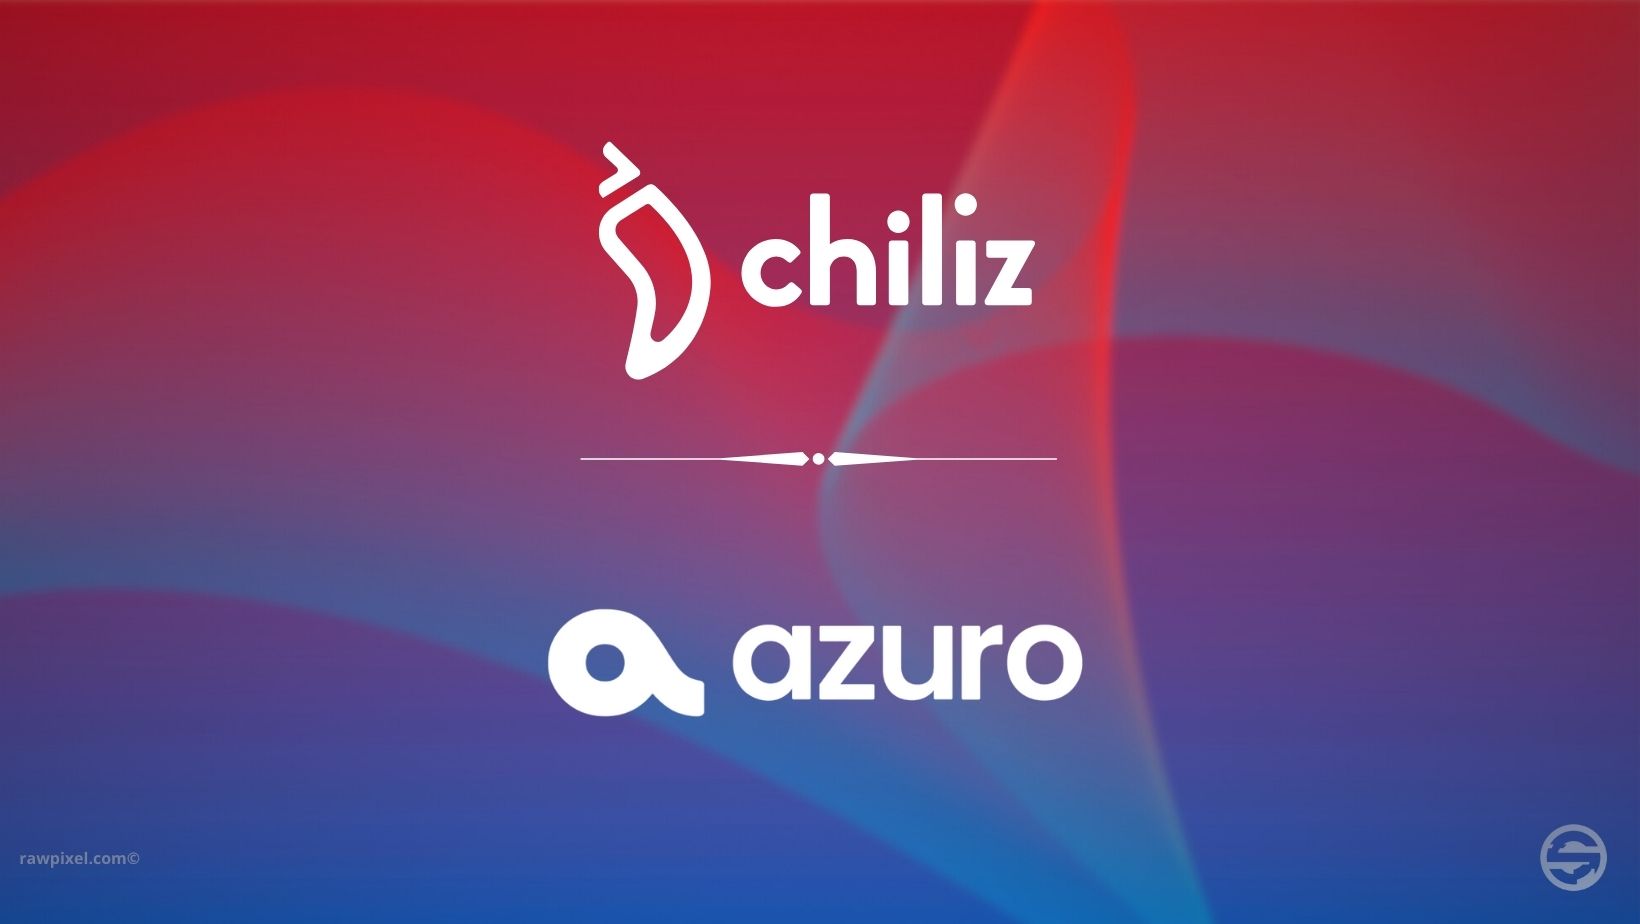 Azuro révolutionne les plateformes de prédiction sportive grâce à Chiliz Chain